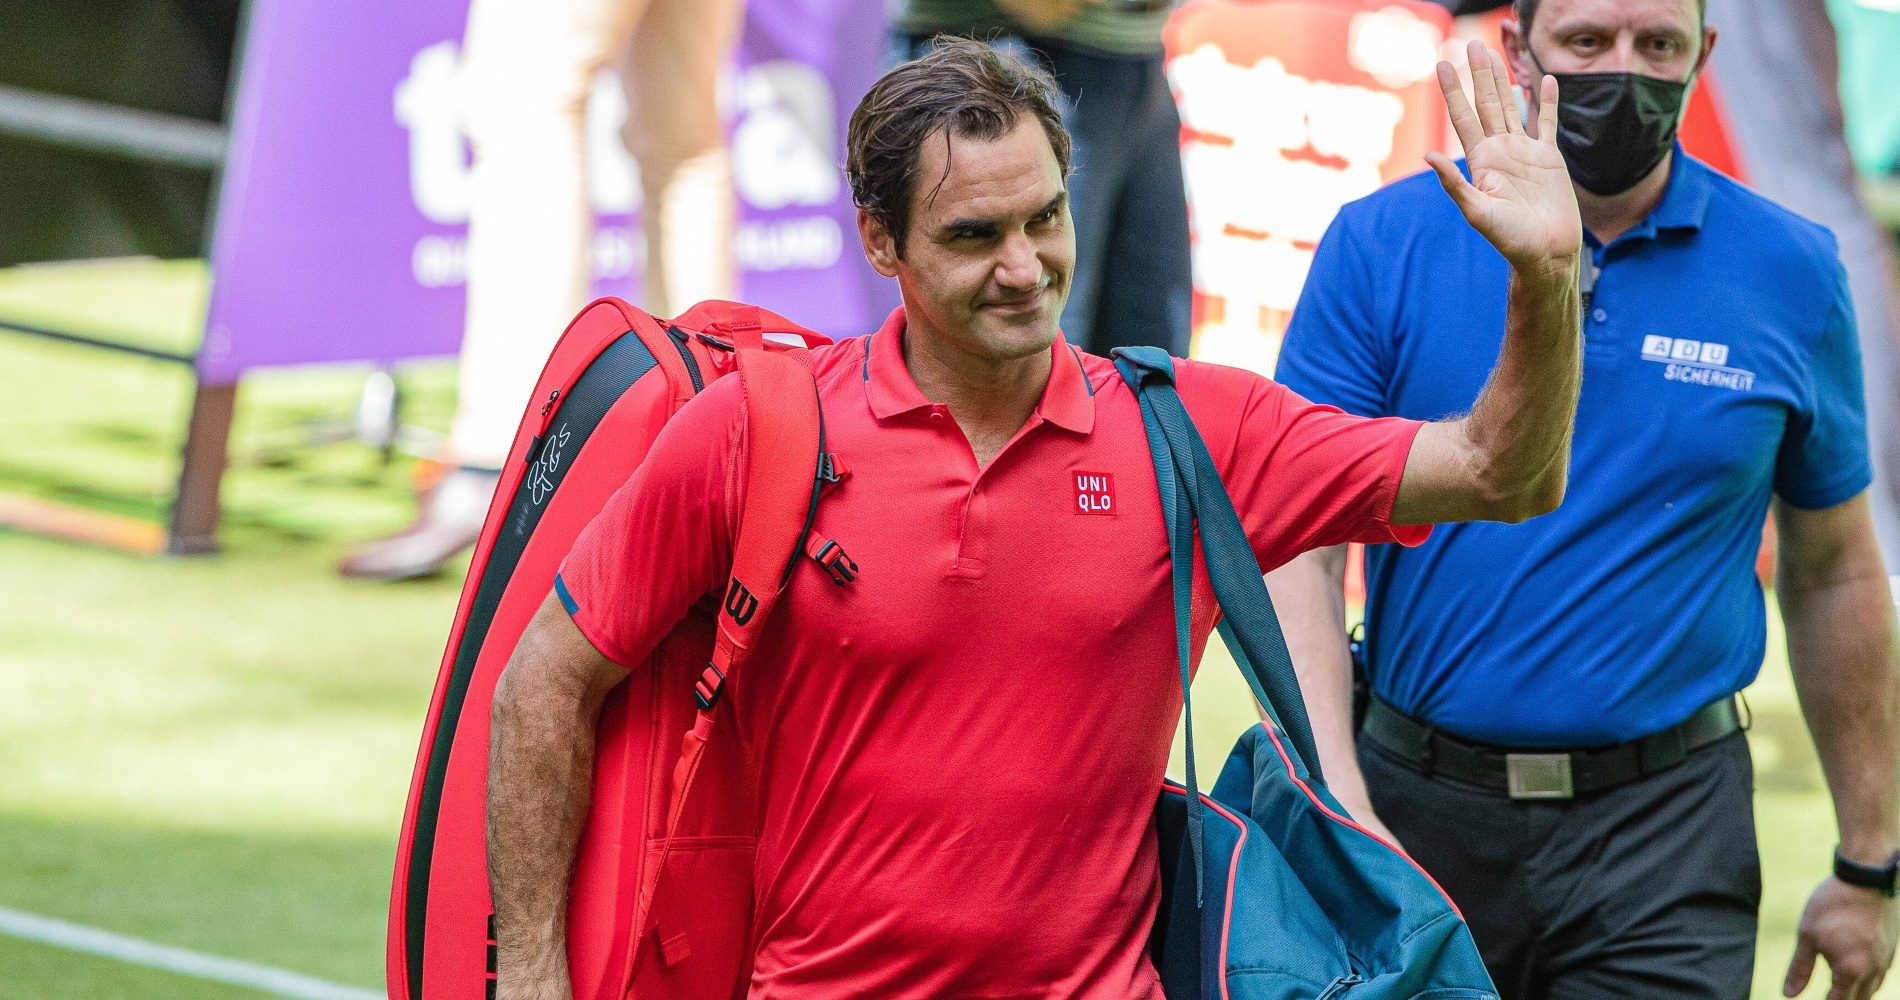 Roger Federer in Halle